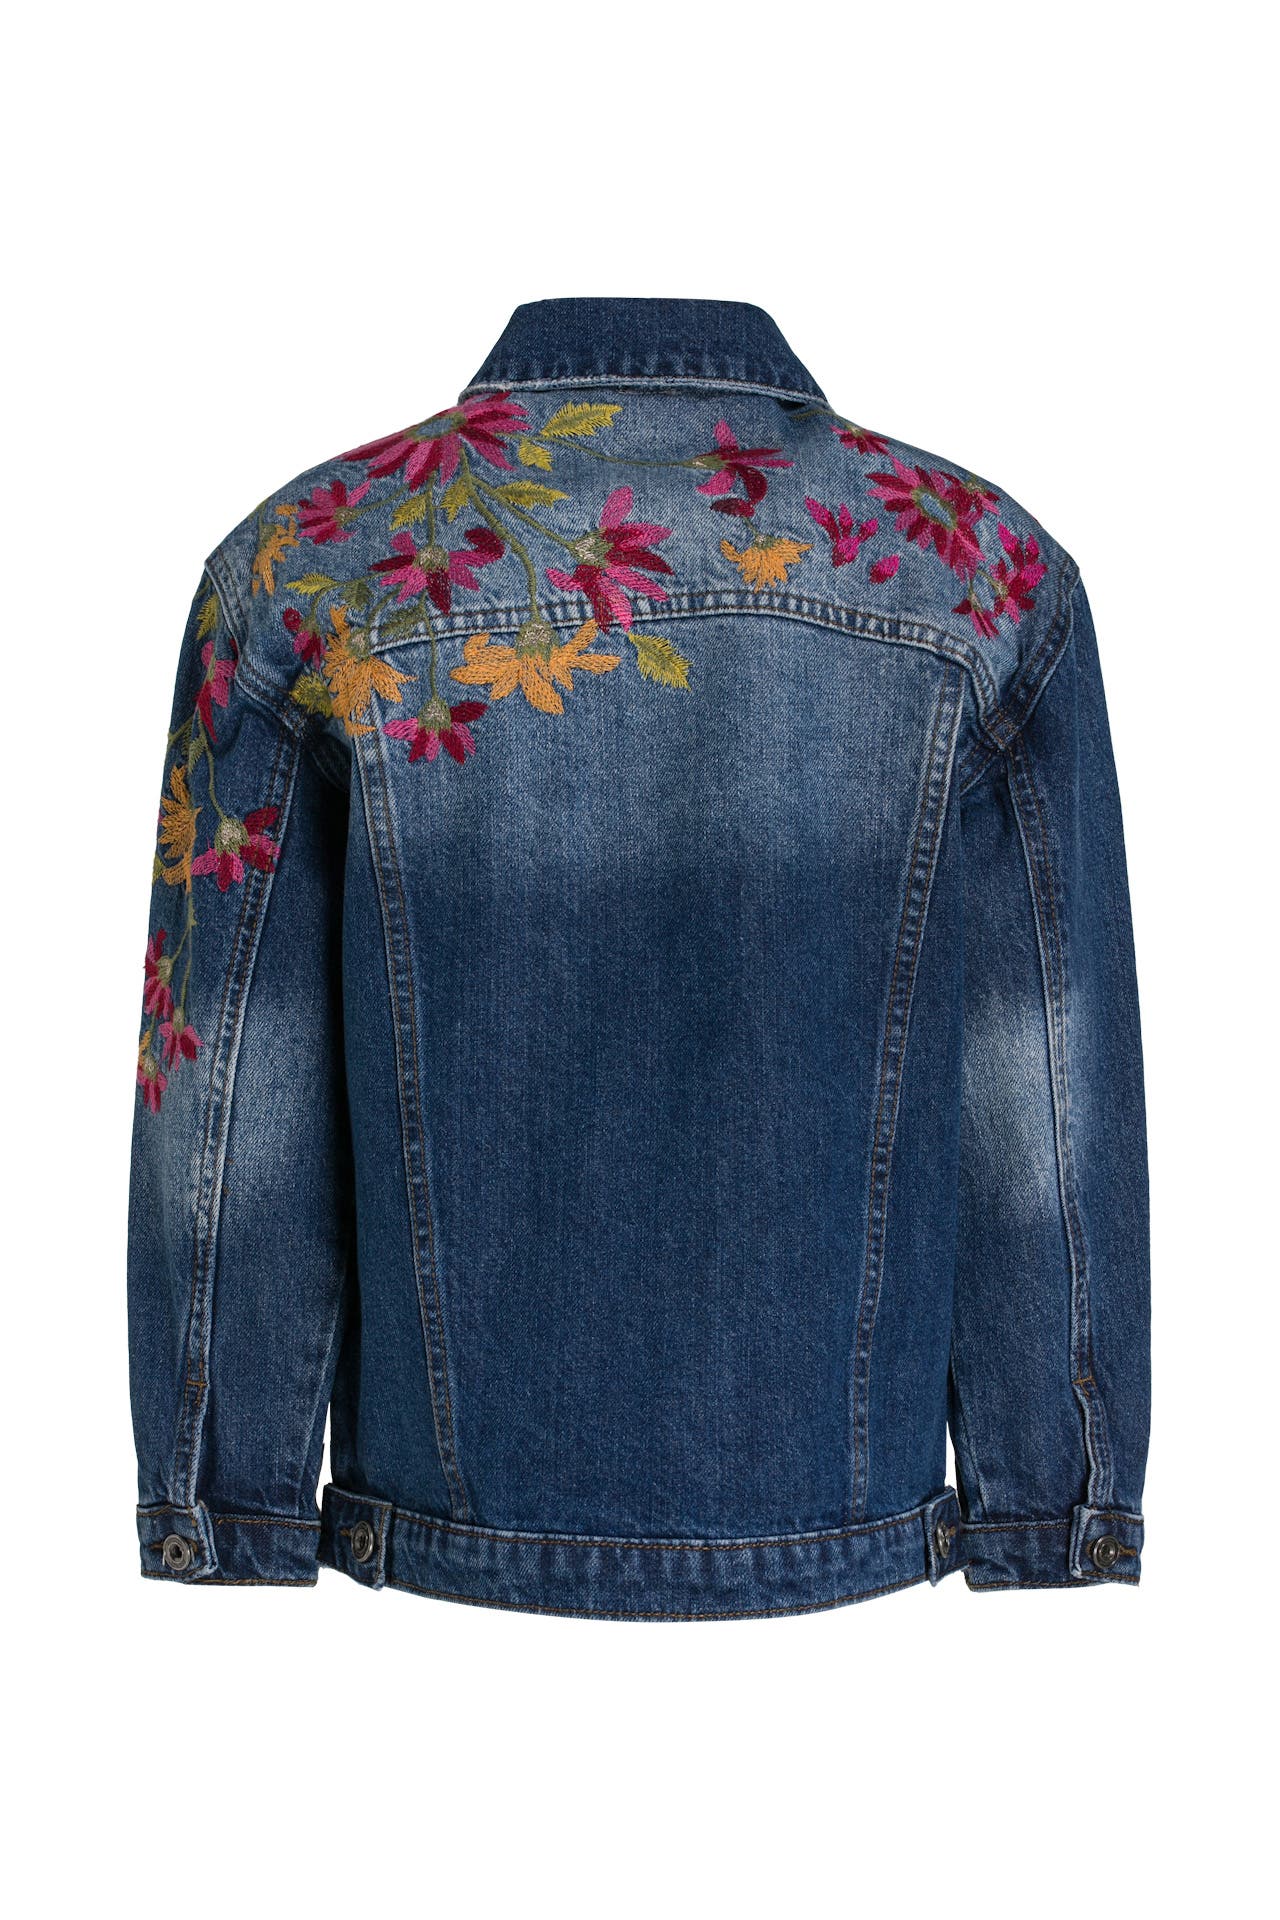 Jeansjacke blau floral - DESIGUAL » günstig online kaufen Outletcity